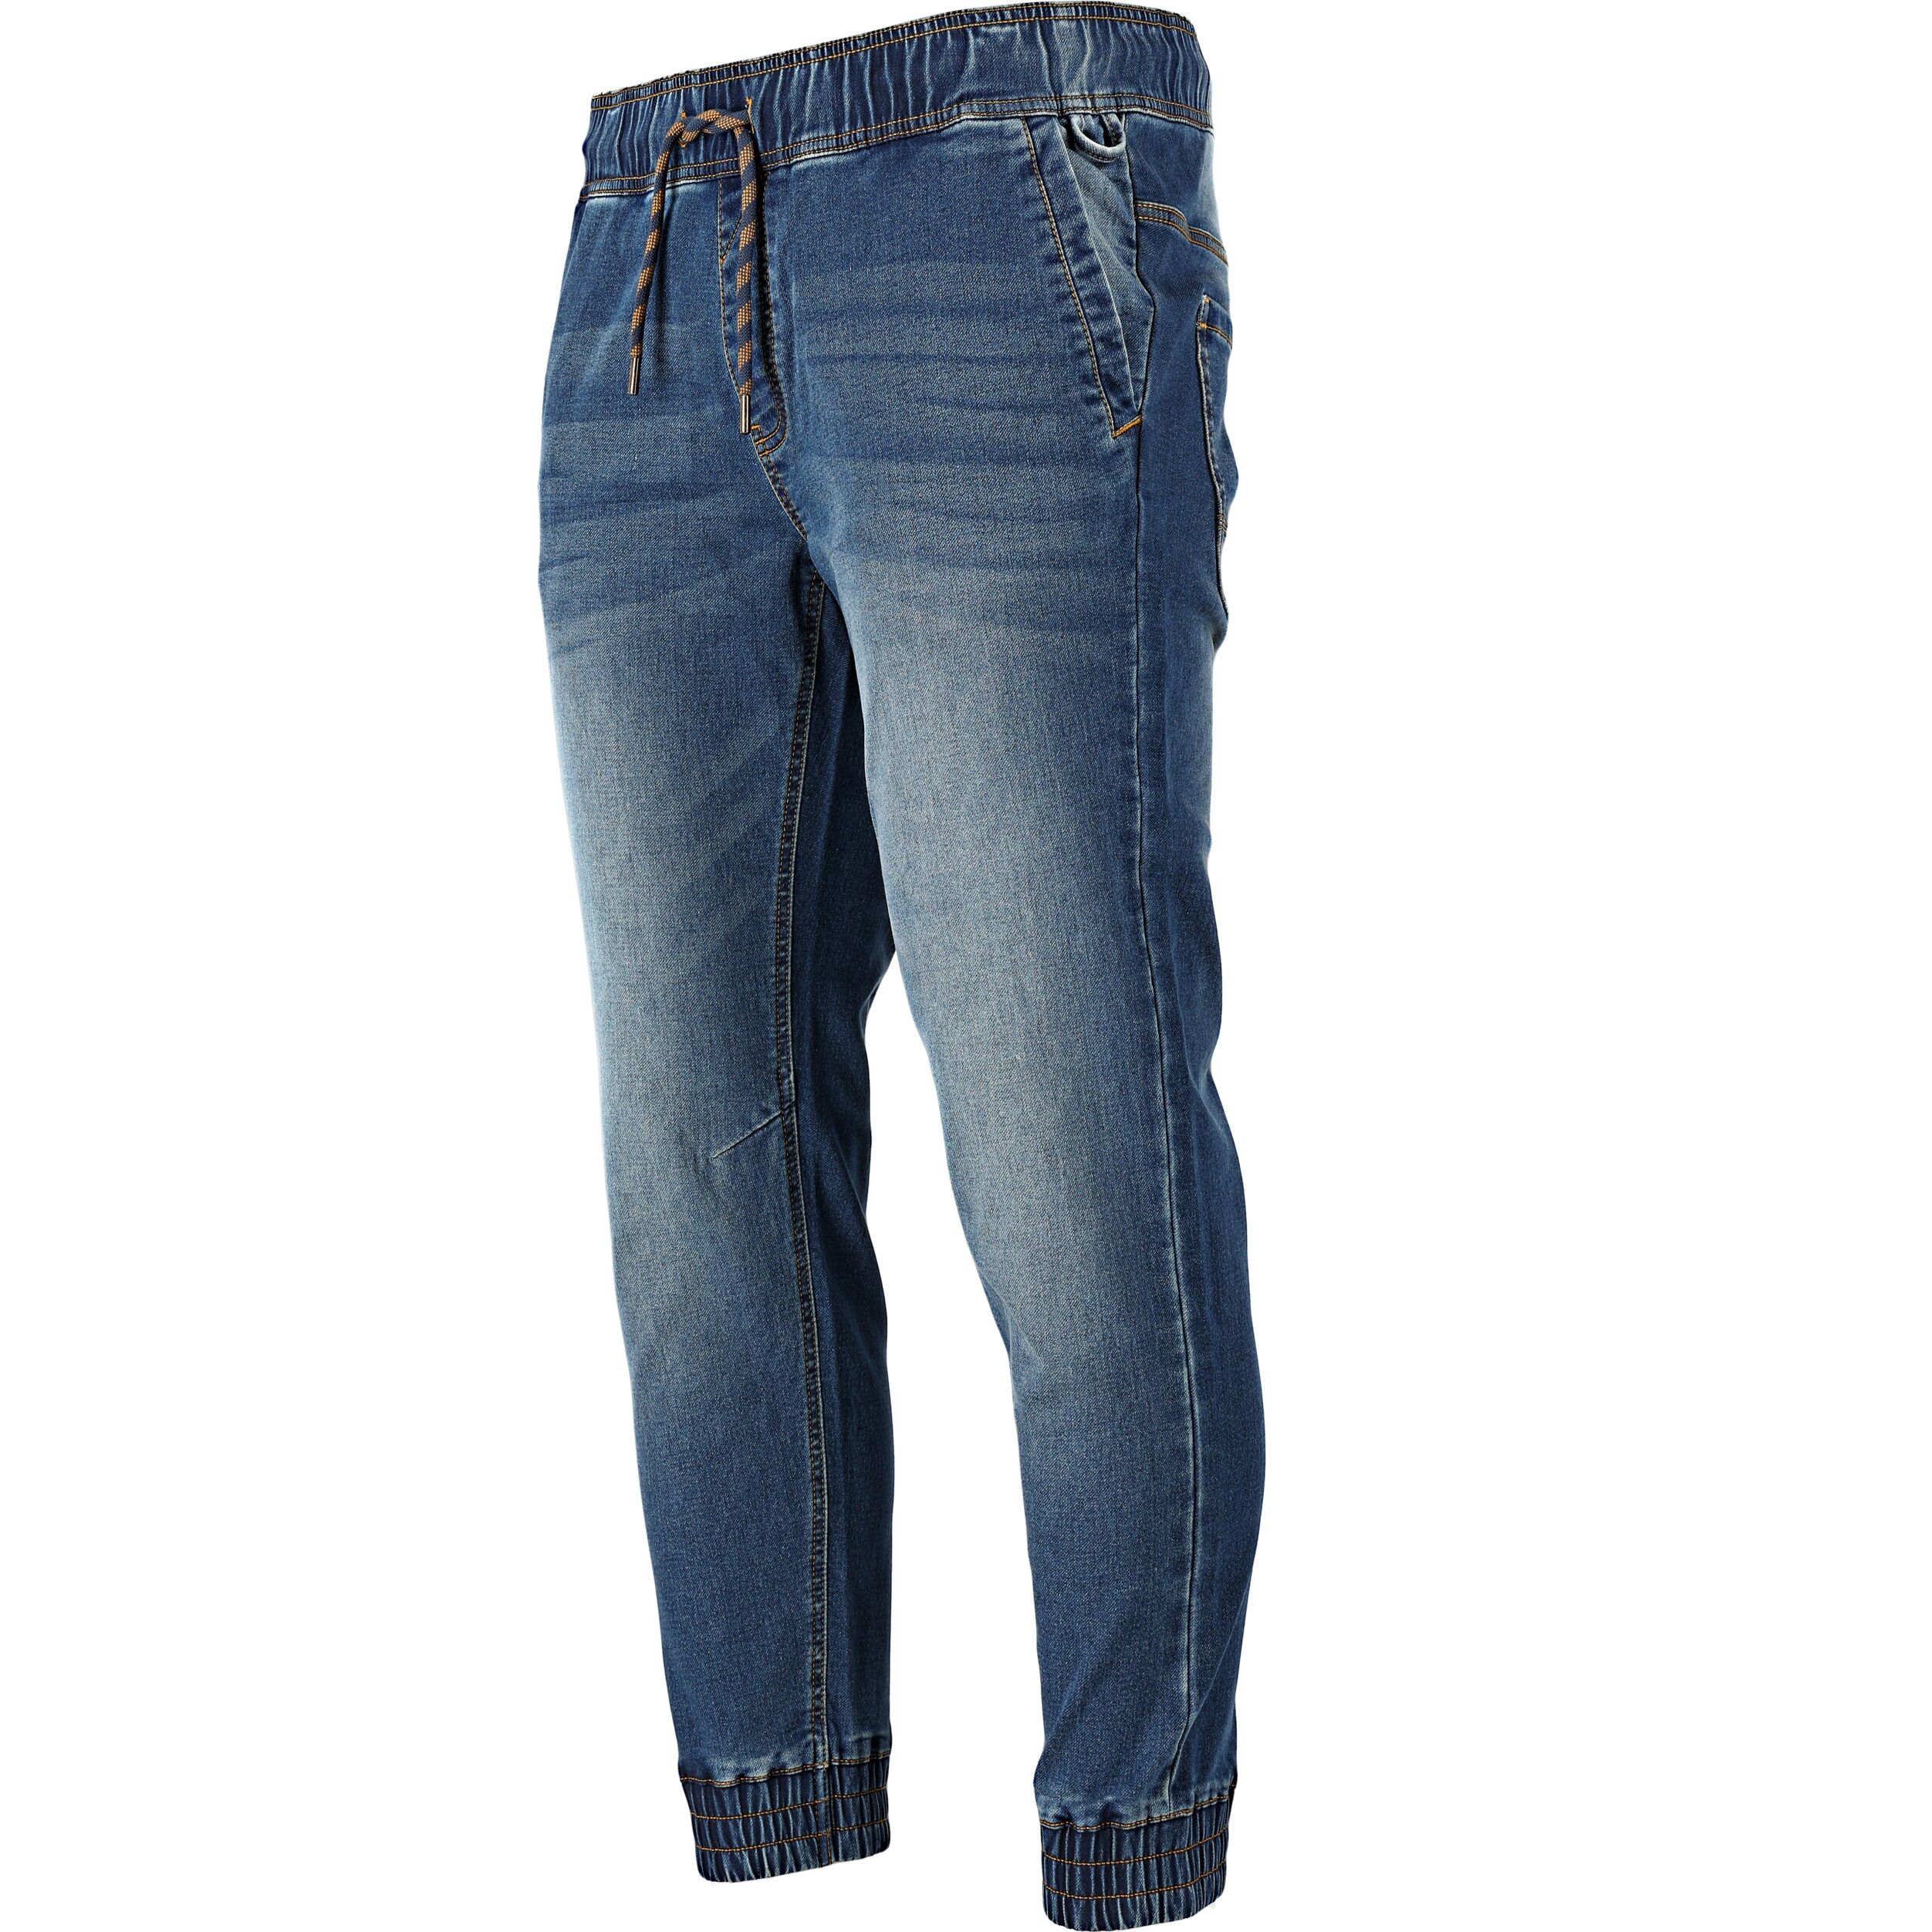 L4053503--Spodnie joggery jeansowe niebieskie stretch, "l", ce, lahti